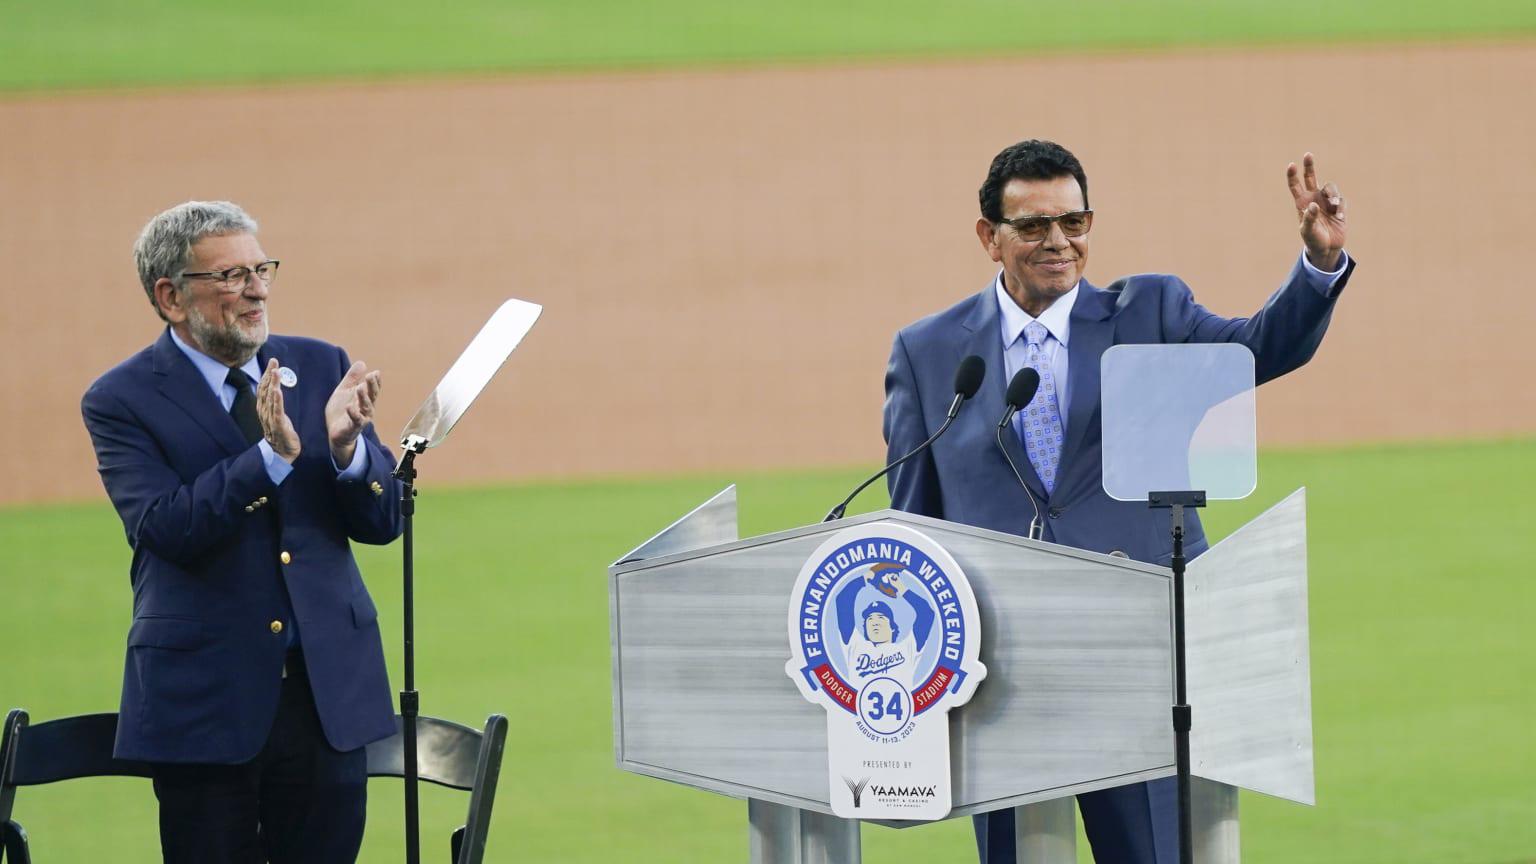 $!El número 34 de Fernando Valenzuela pasa a la inmortalidad de Dodgers